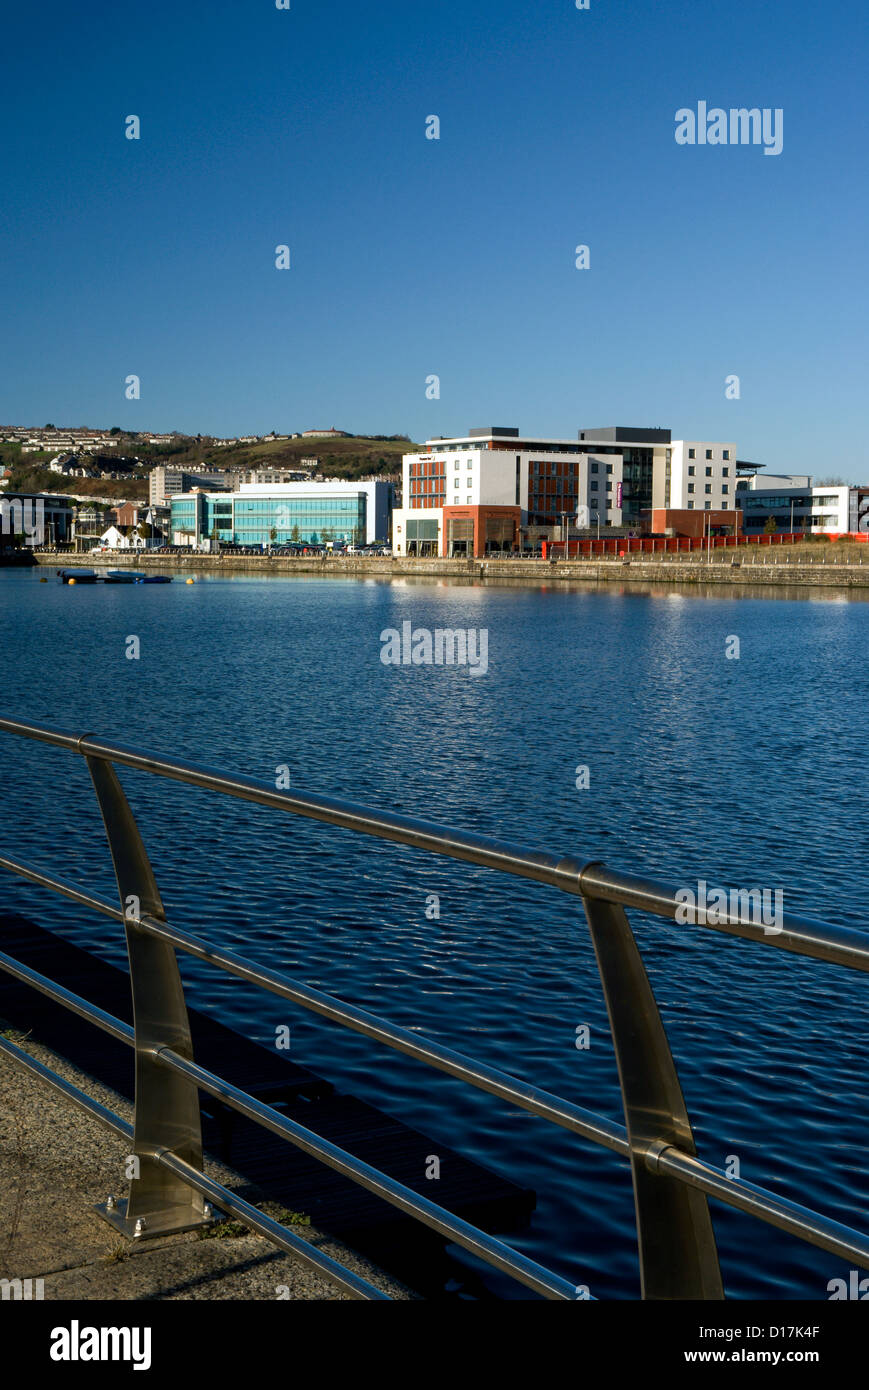 L'ancien dock SA1 development swansea Galles du Sud Royaume-Uni Banque D'Images